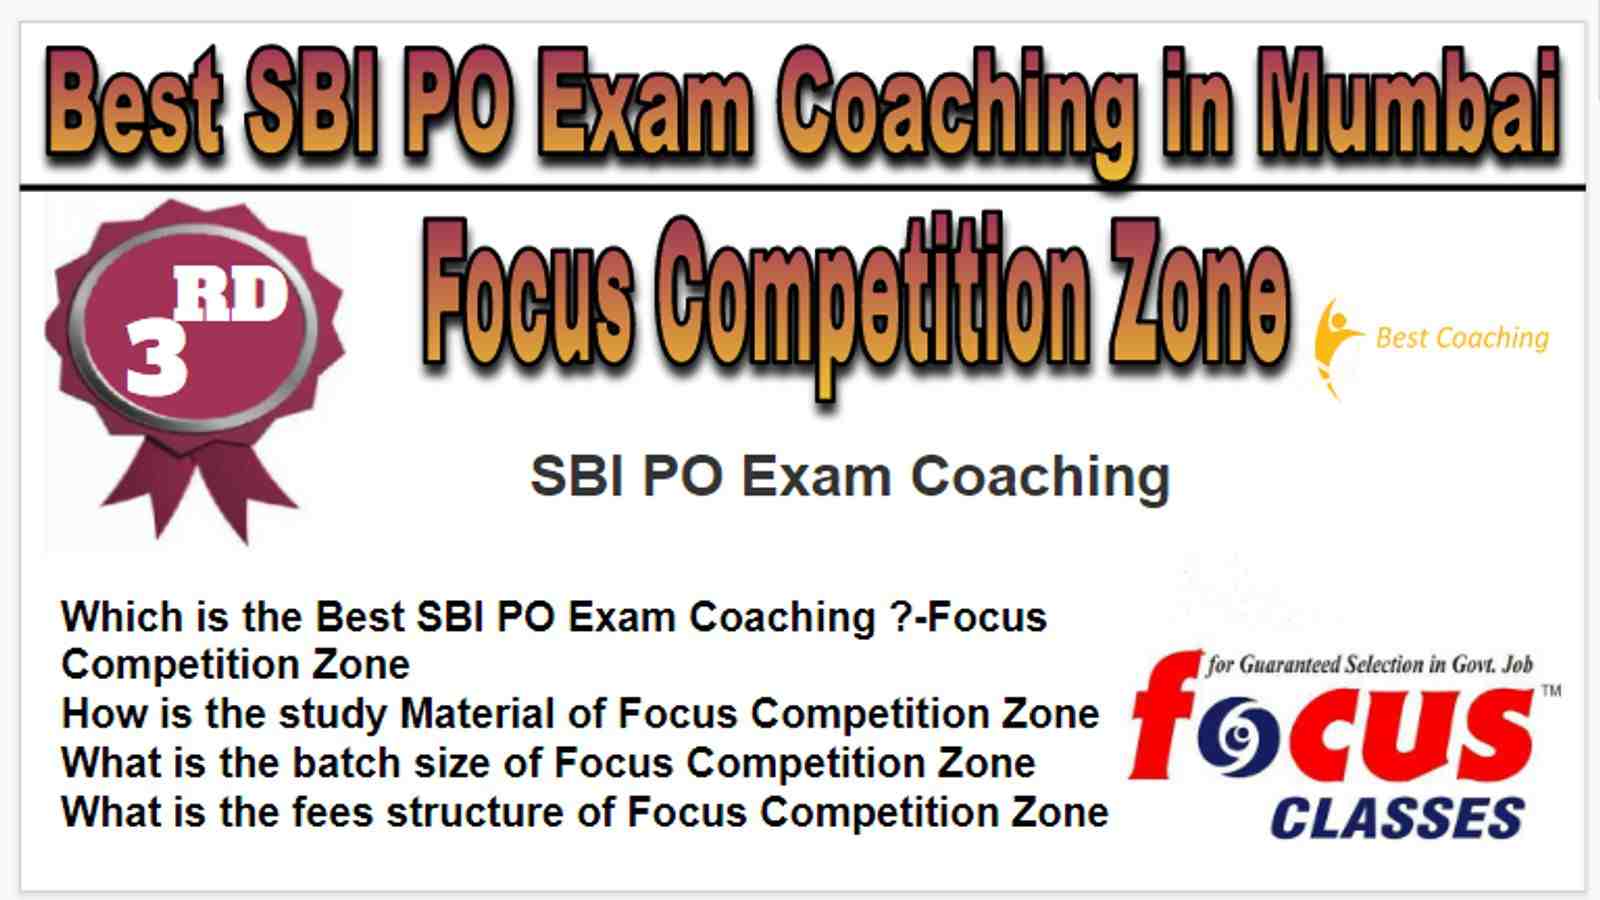 Rank 3 Best SBI PO Exam Coaching in Mumbai